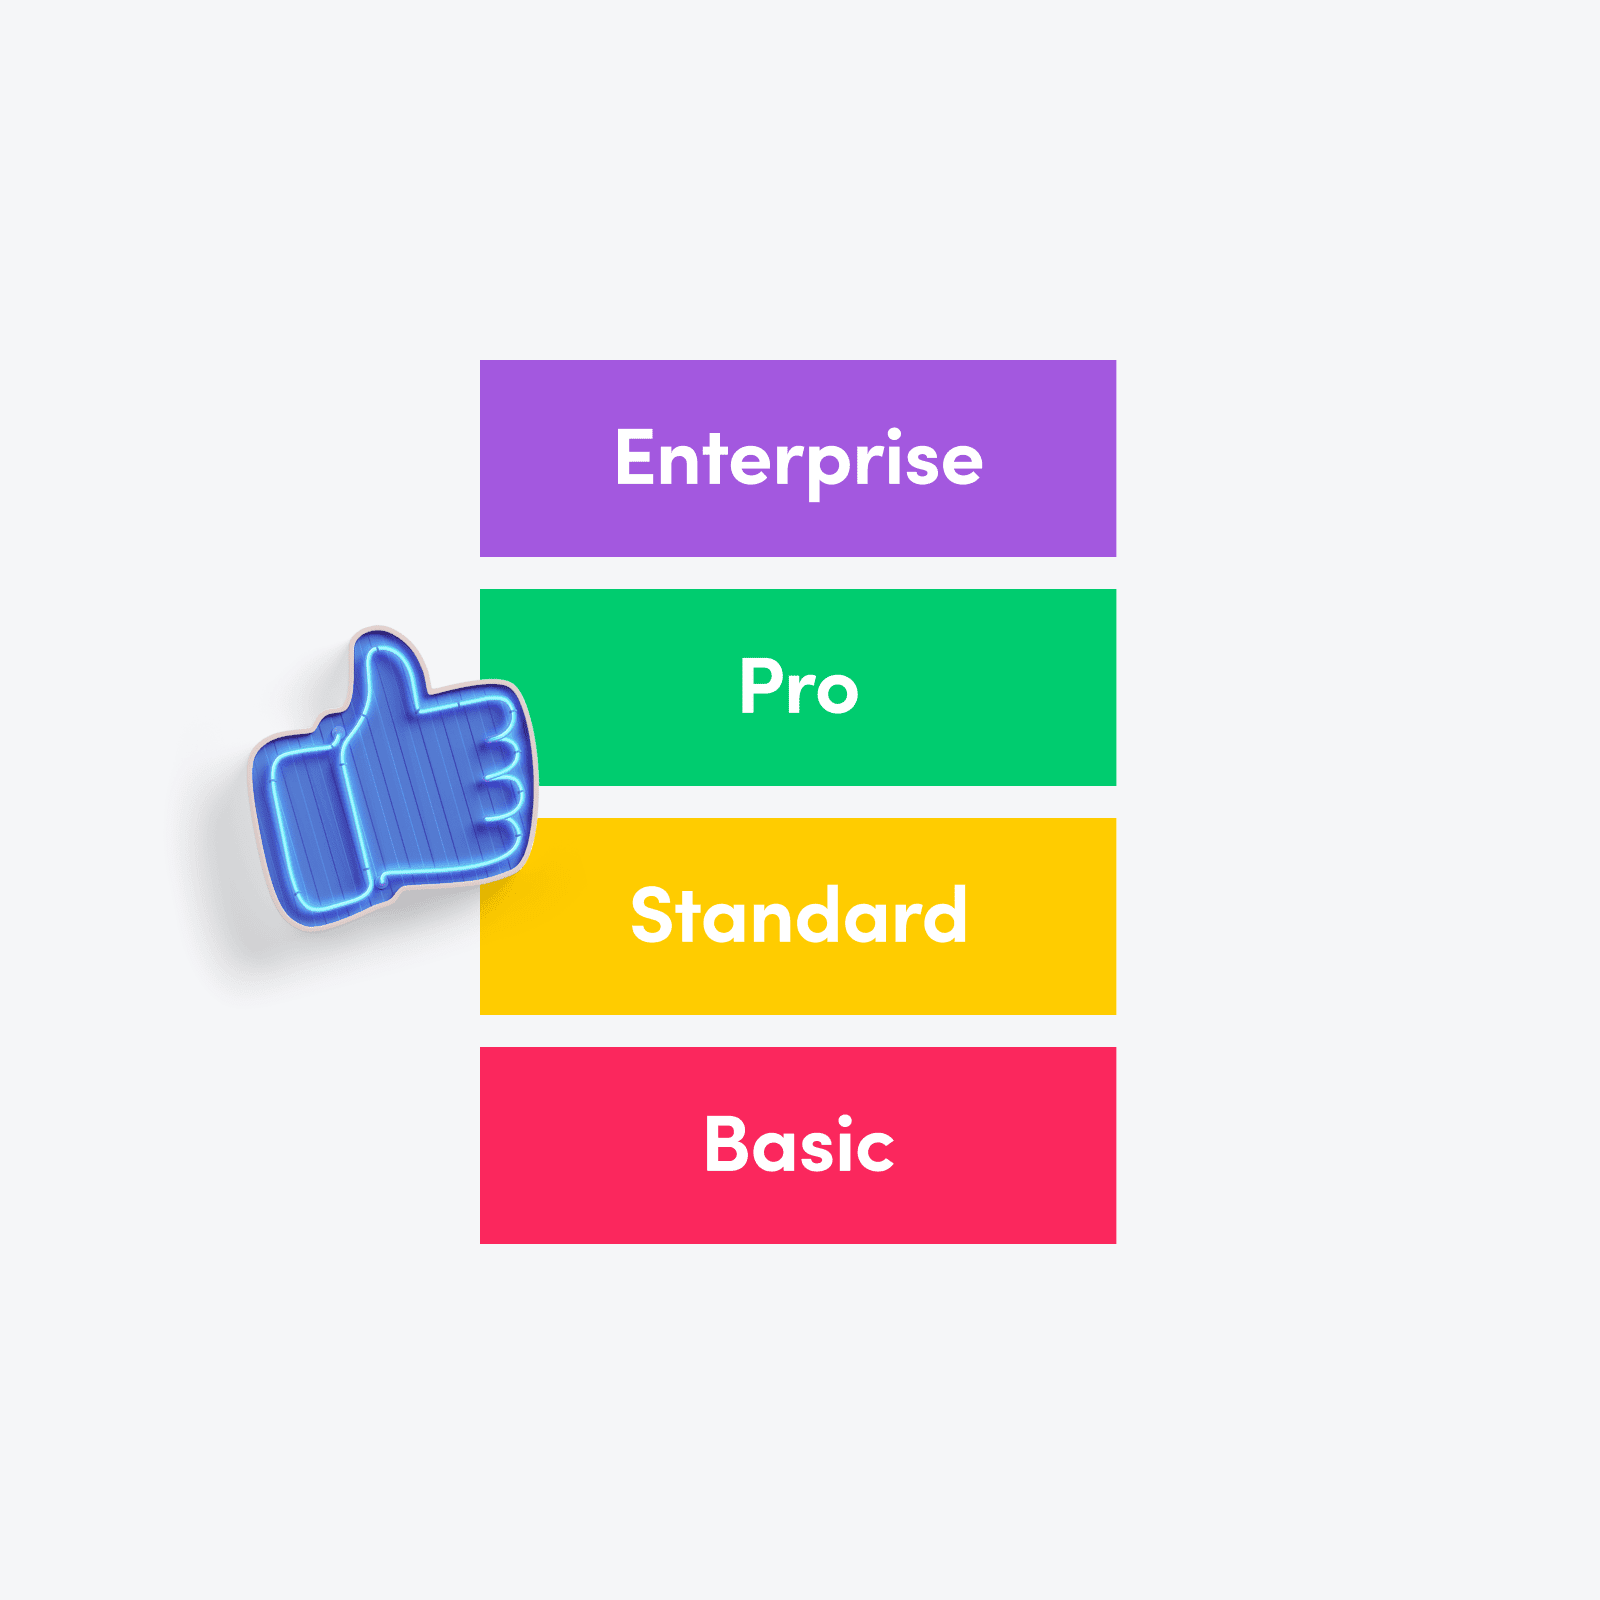 Darstellung der unterschiedlichen monday.com Pakete: Enterprise, Pro, Standard, Basic